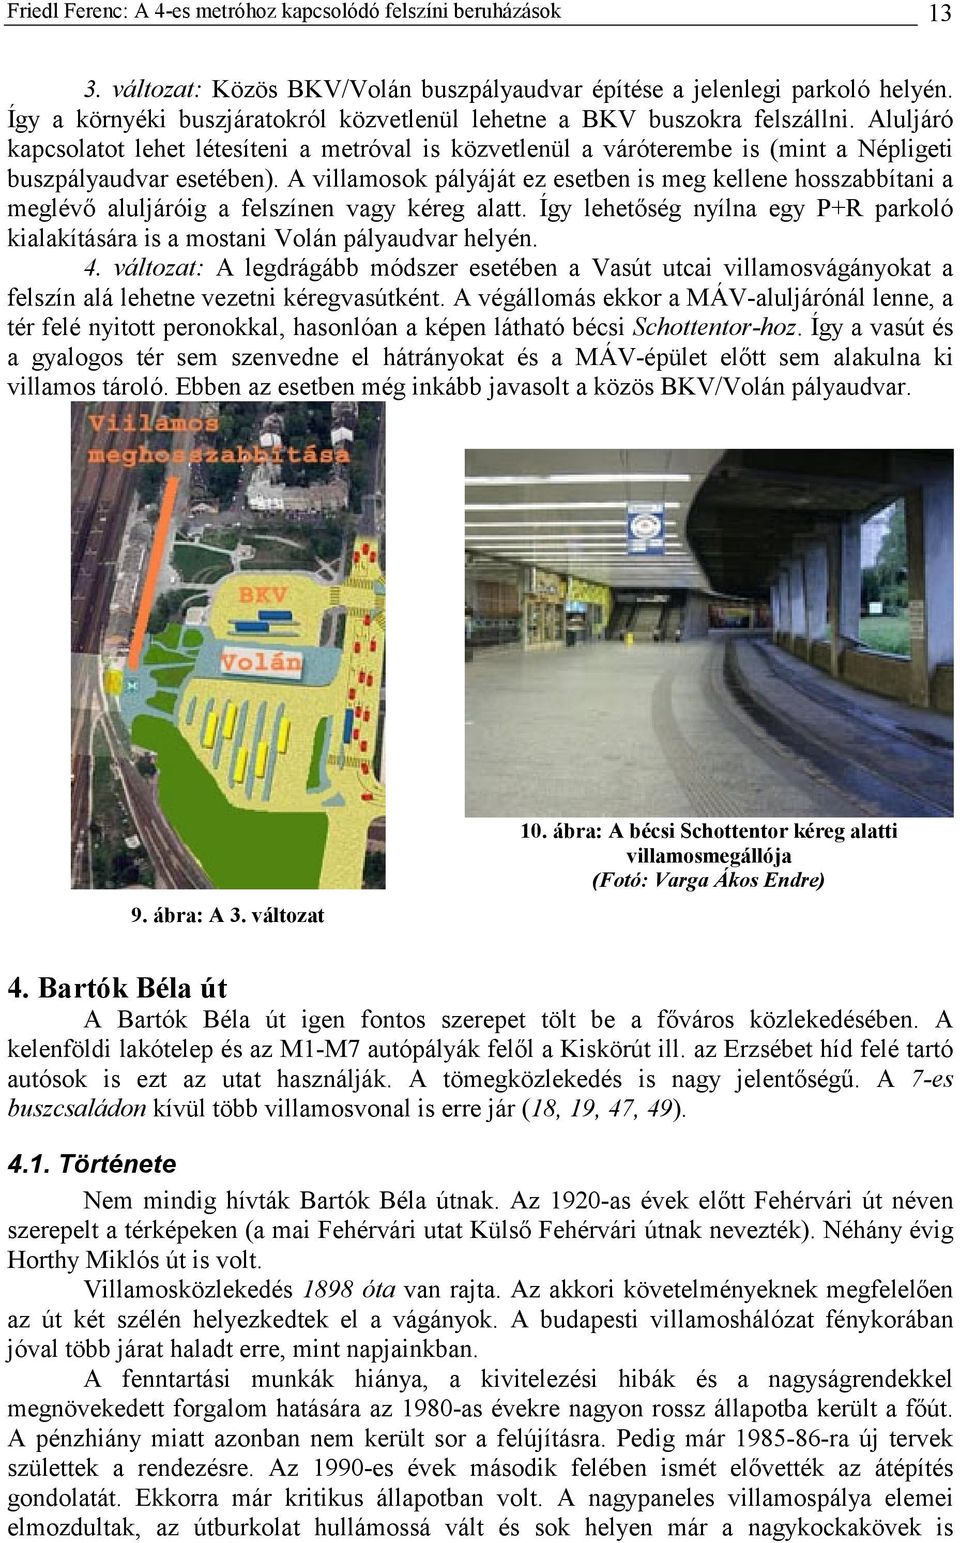 Aluljáró kapcsolatot lehet létesíteni a metróval is közvetlenül a váróterembe is (mint a Népligeti buszpályaudvar esetében).